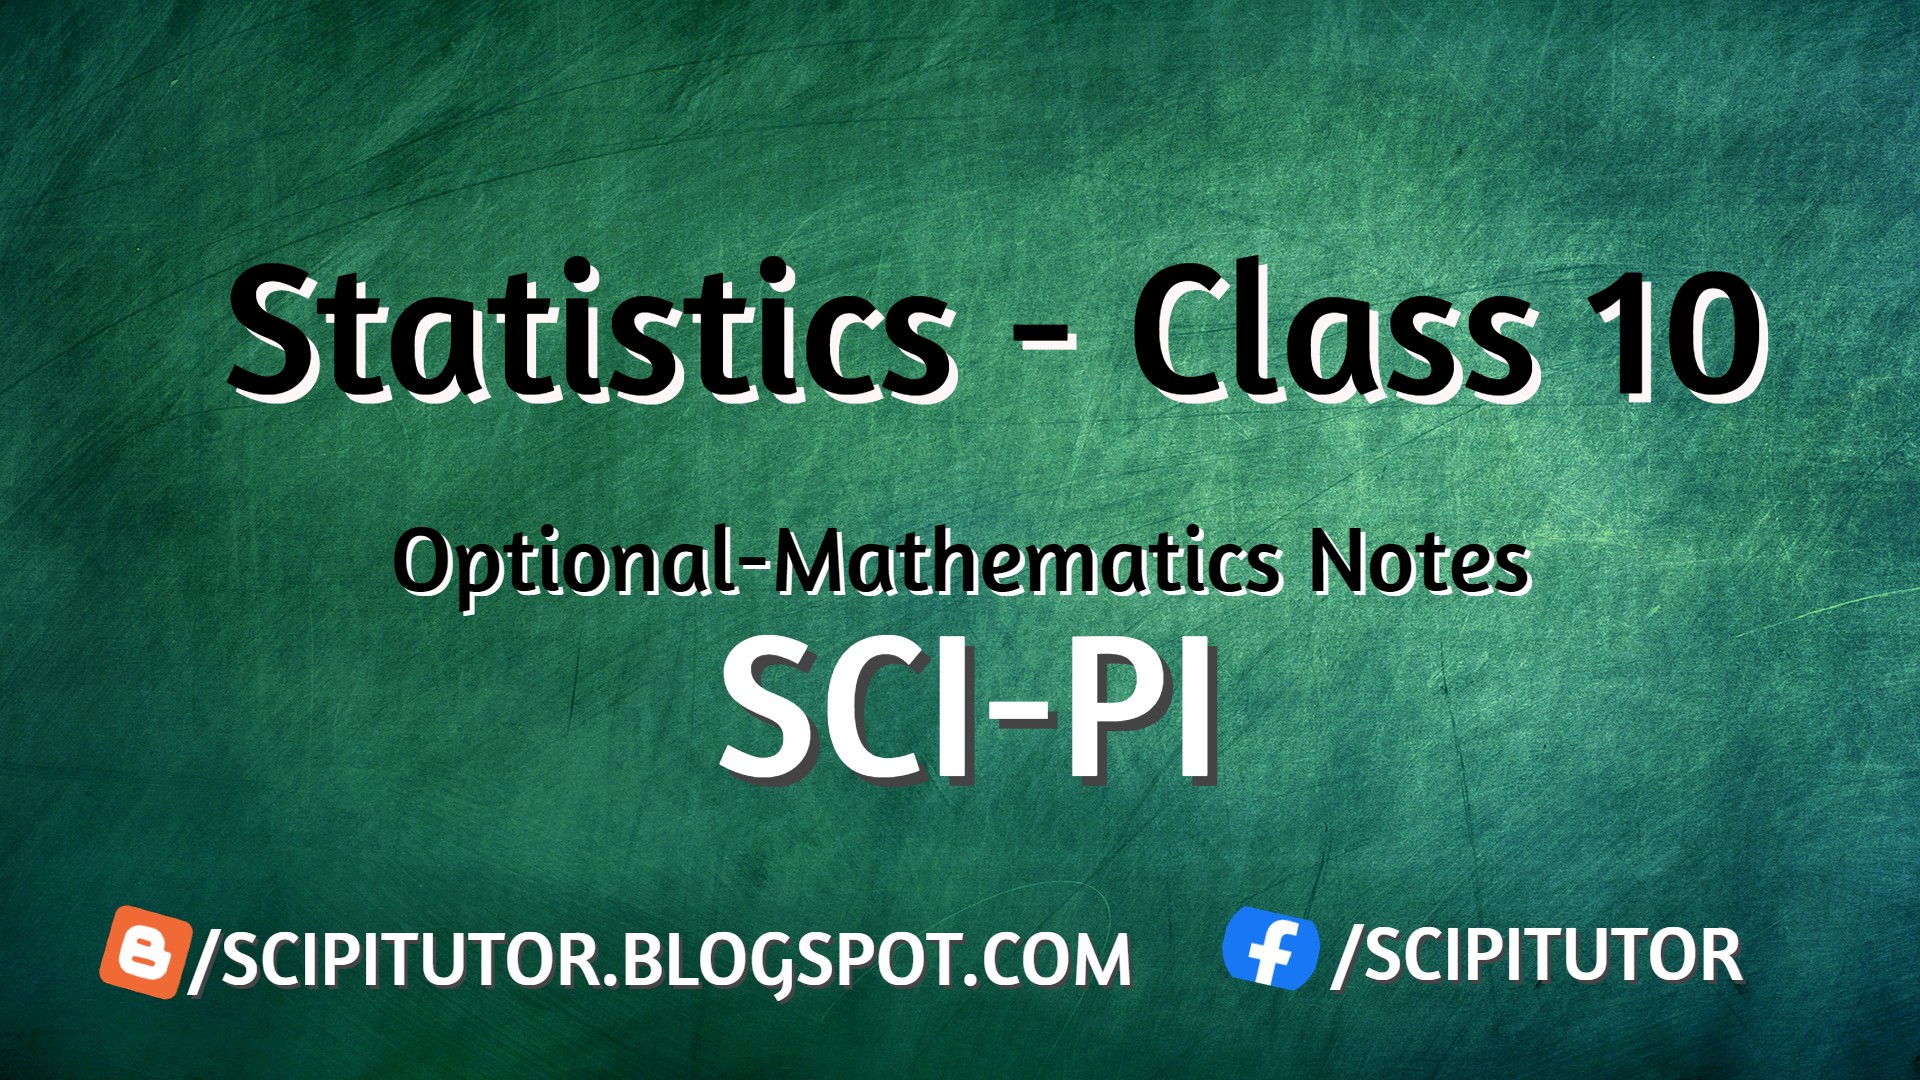 Statistics Class 10 Optional Mathematics Notes